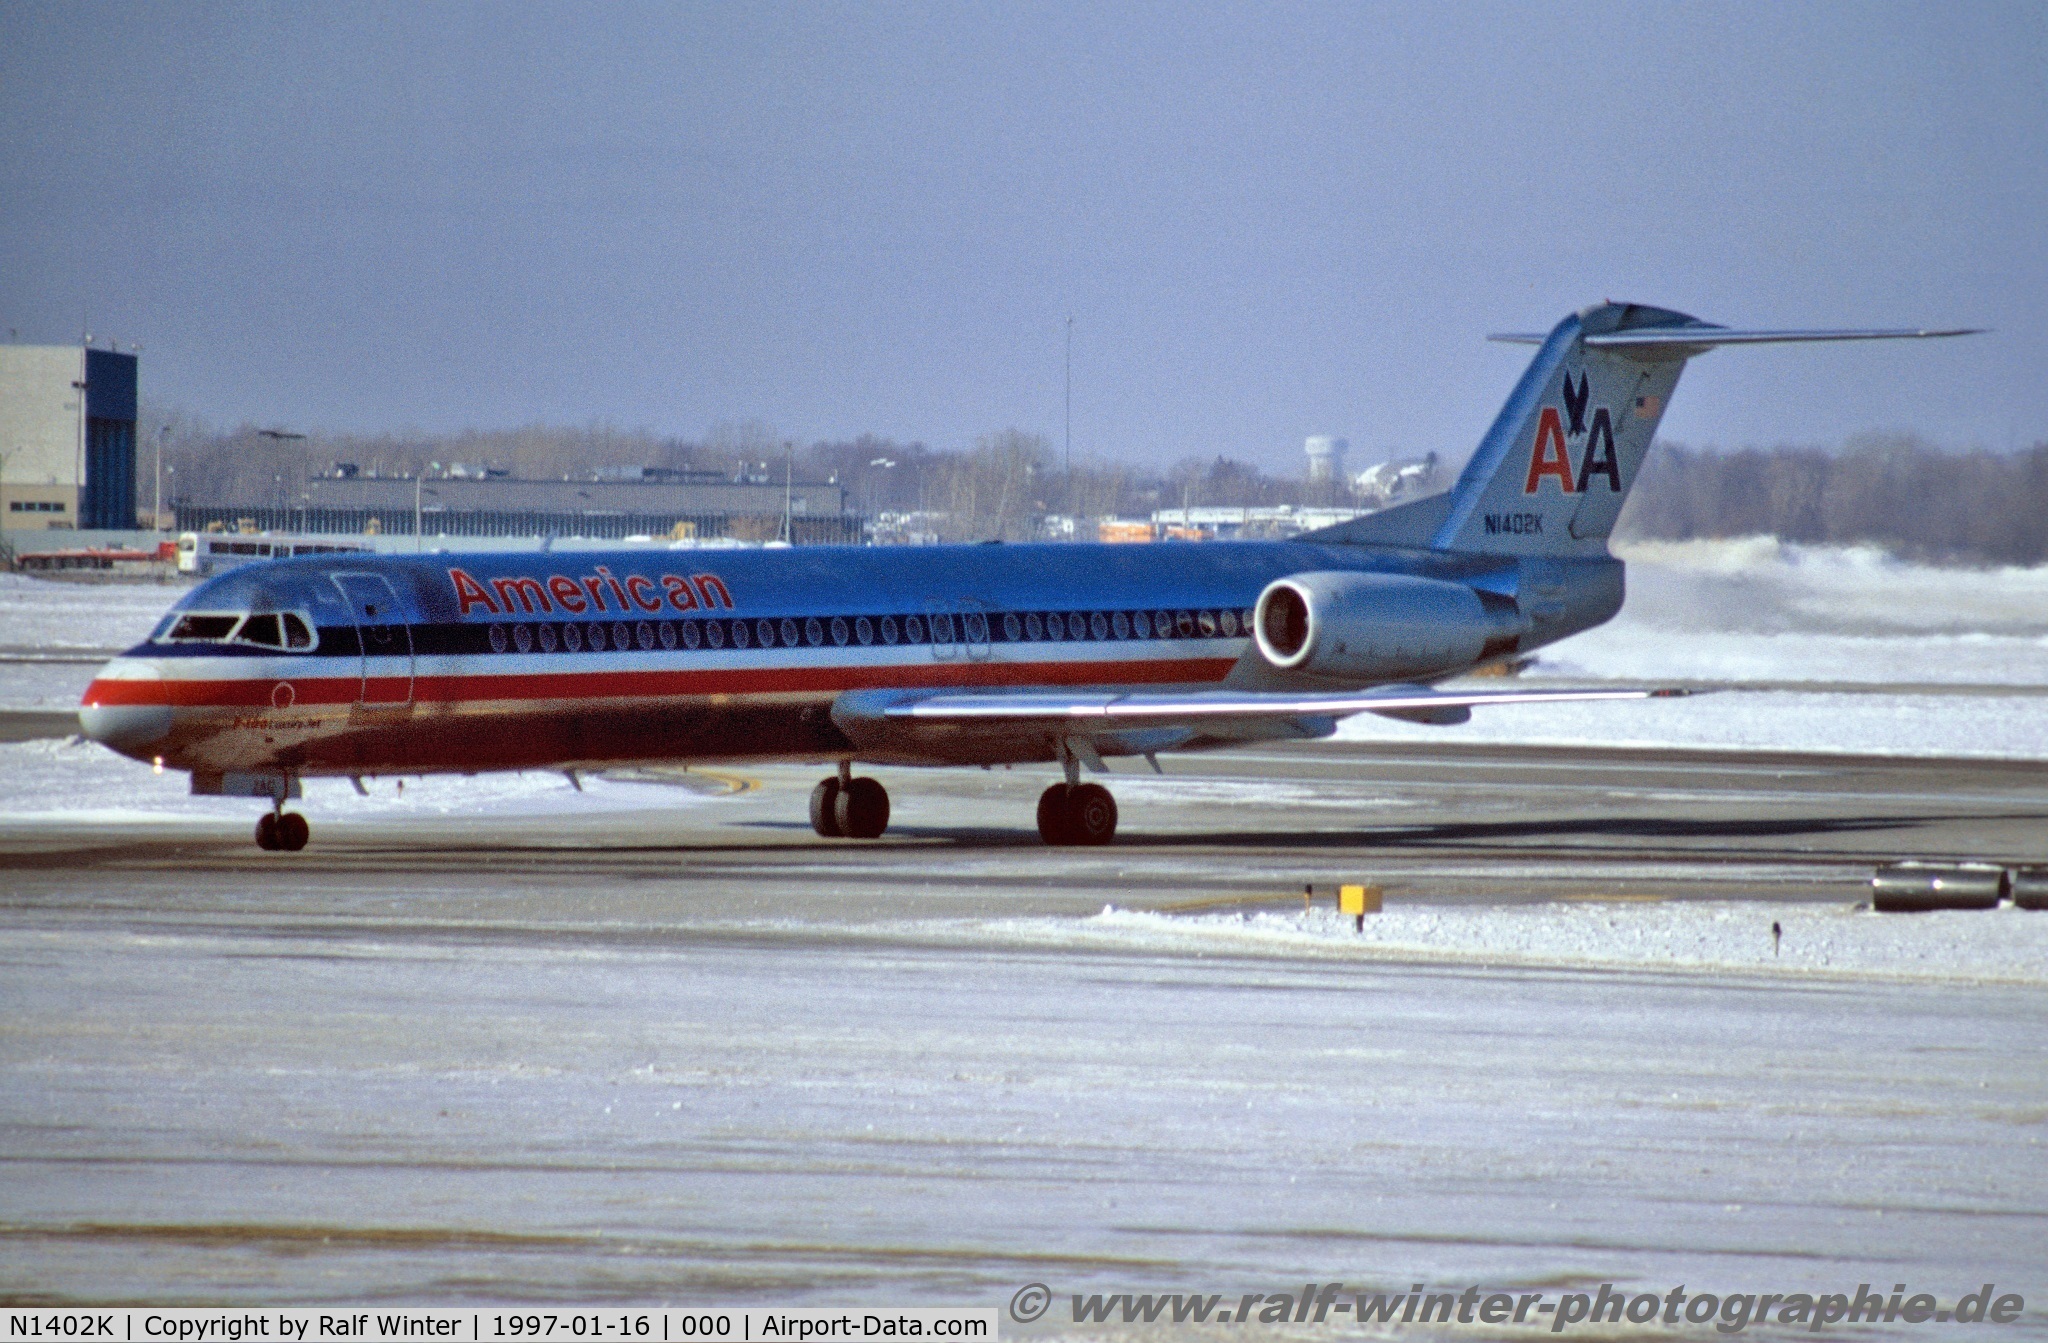 N1402K, 1991 Fokker 100 (F-28-0100) C/N 11353, Fokker 100 F28-0100 - AA AAL American Airlines - 11353 - N1402K - 16.01.1997